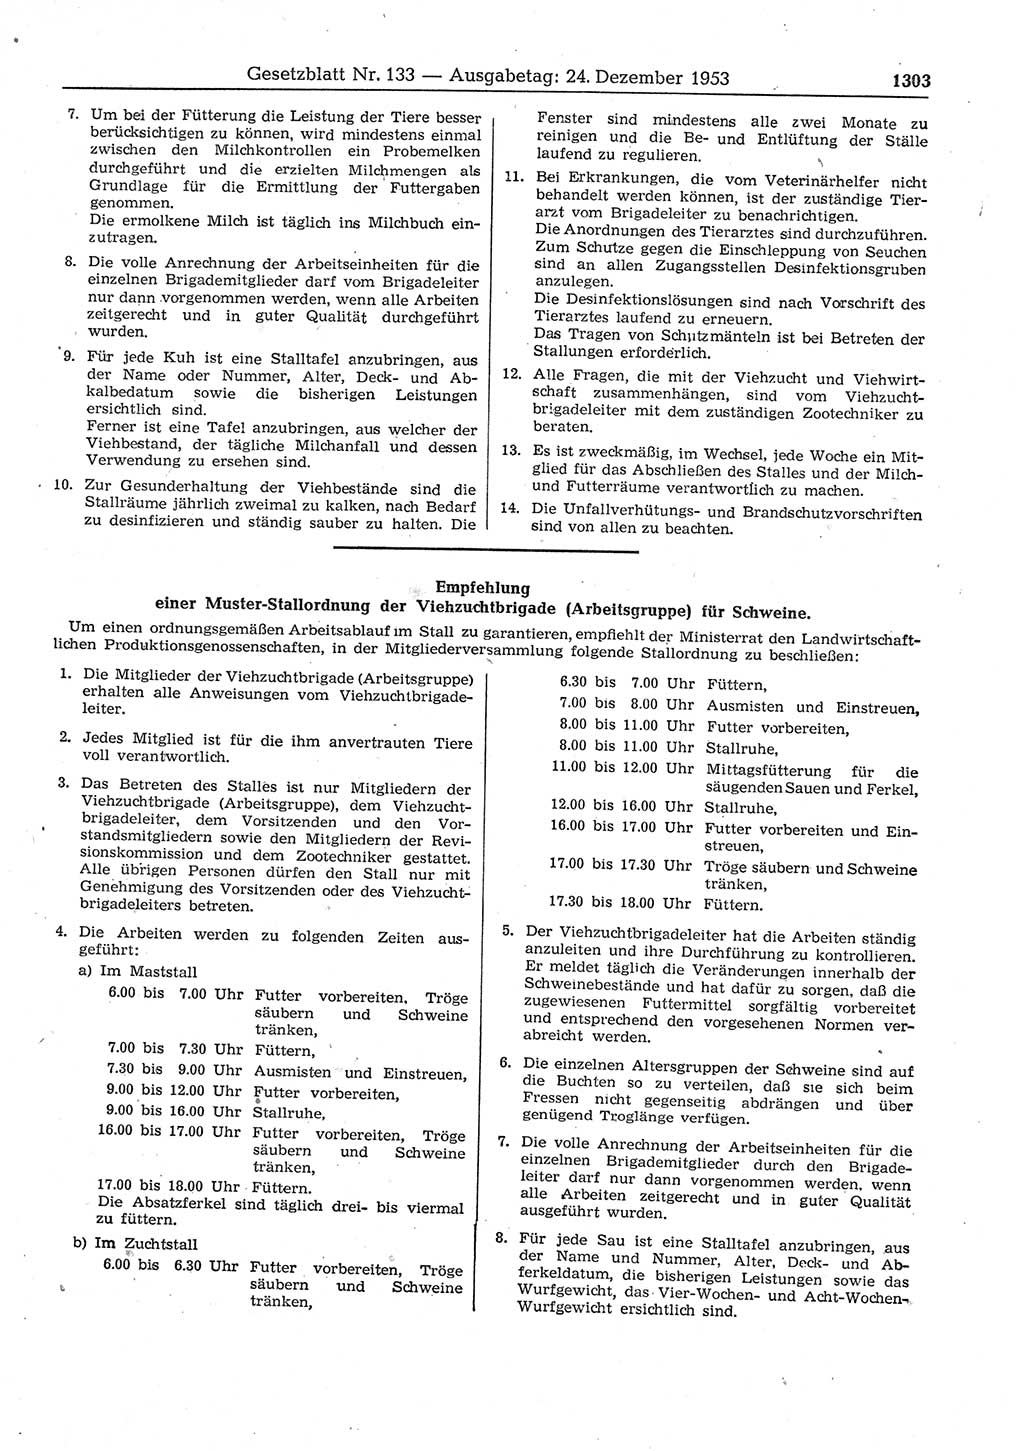 Gesetzblatt (GBl.) der Deutschen Demokratischen Republik (DDR) 1953, Seite 1303 (GBl. DDR 1953, S. 1303)